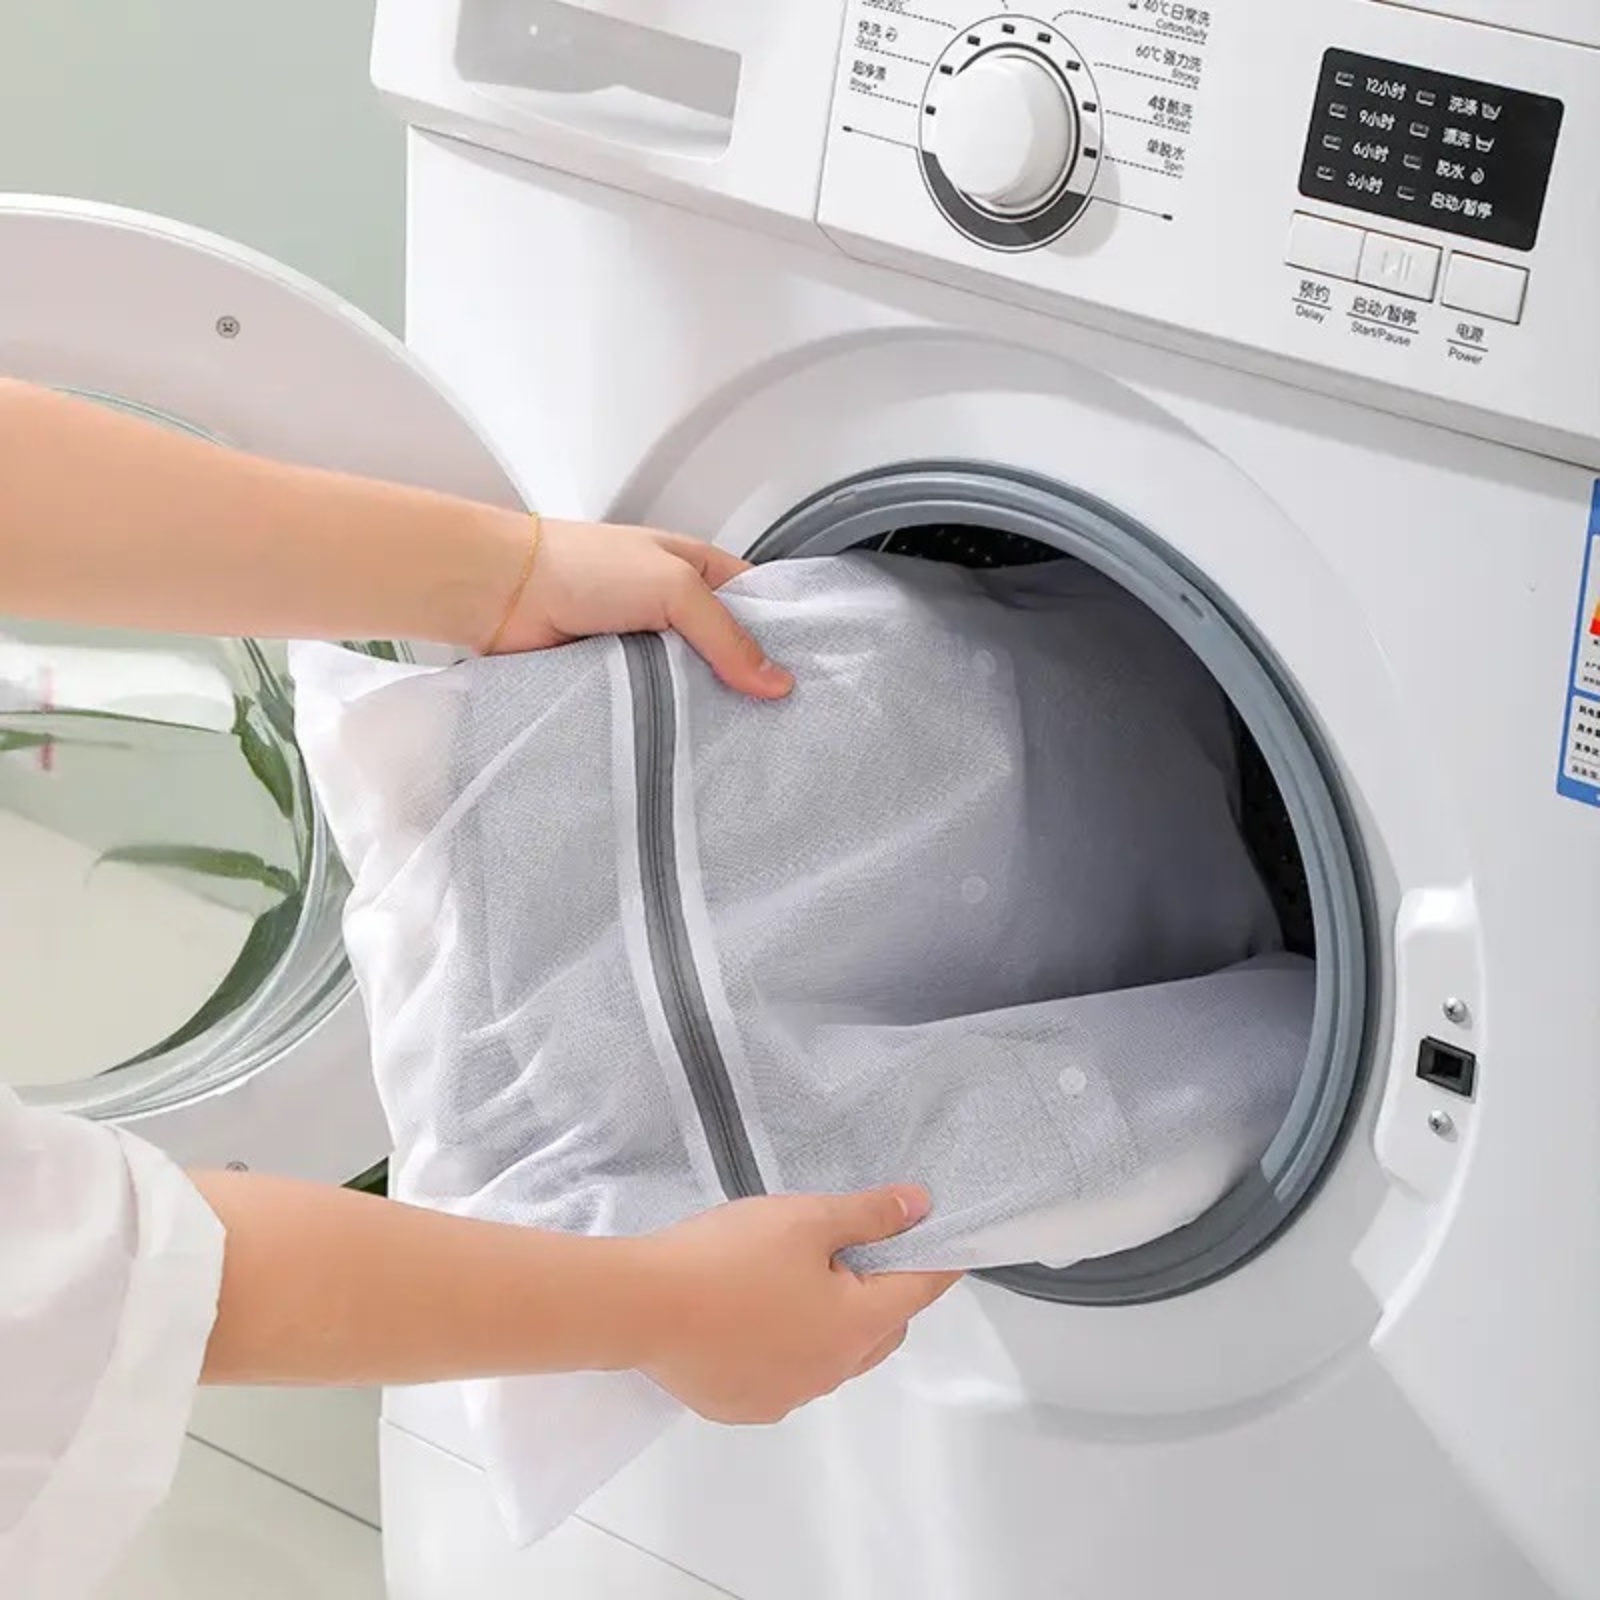 DIY: Cómo hacer bolsas para lavar la ropa delicada en la lavadora.